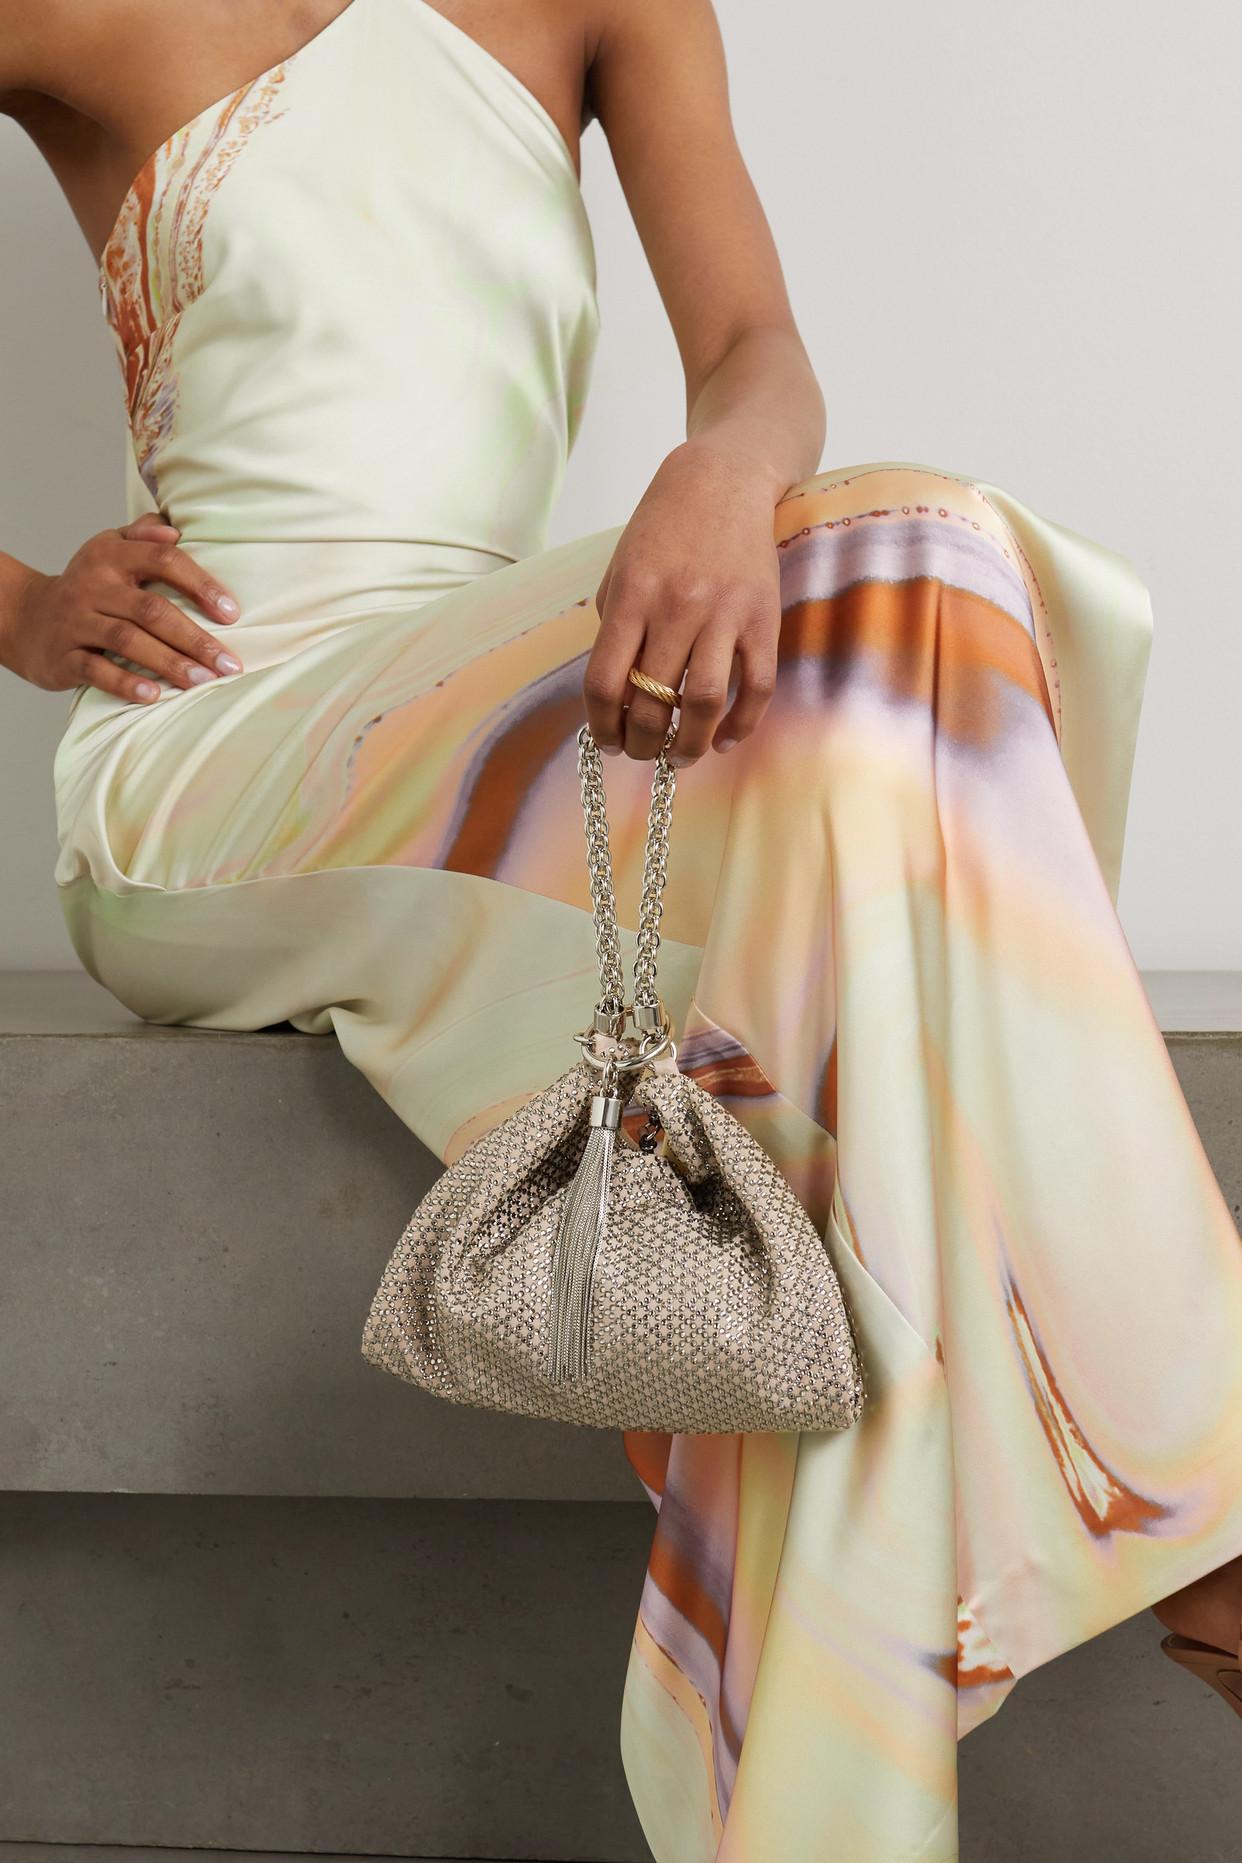 Christie Mini Crystal Embellished Suede Envelope Bag